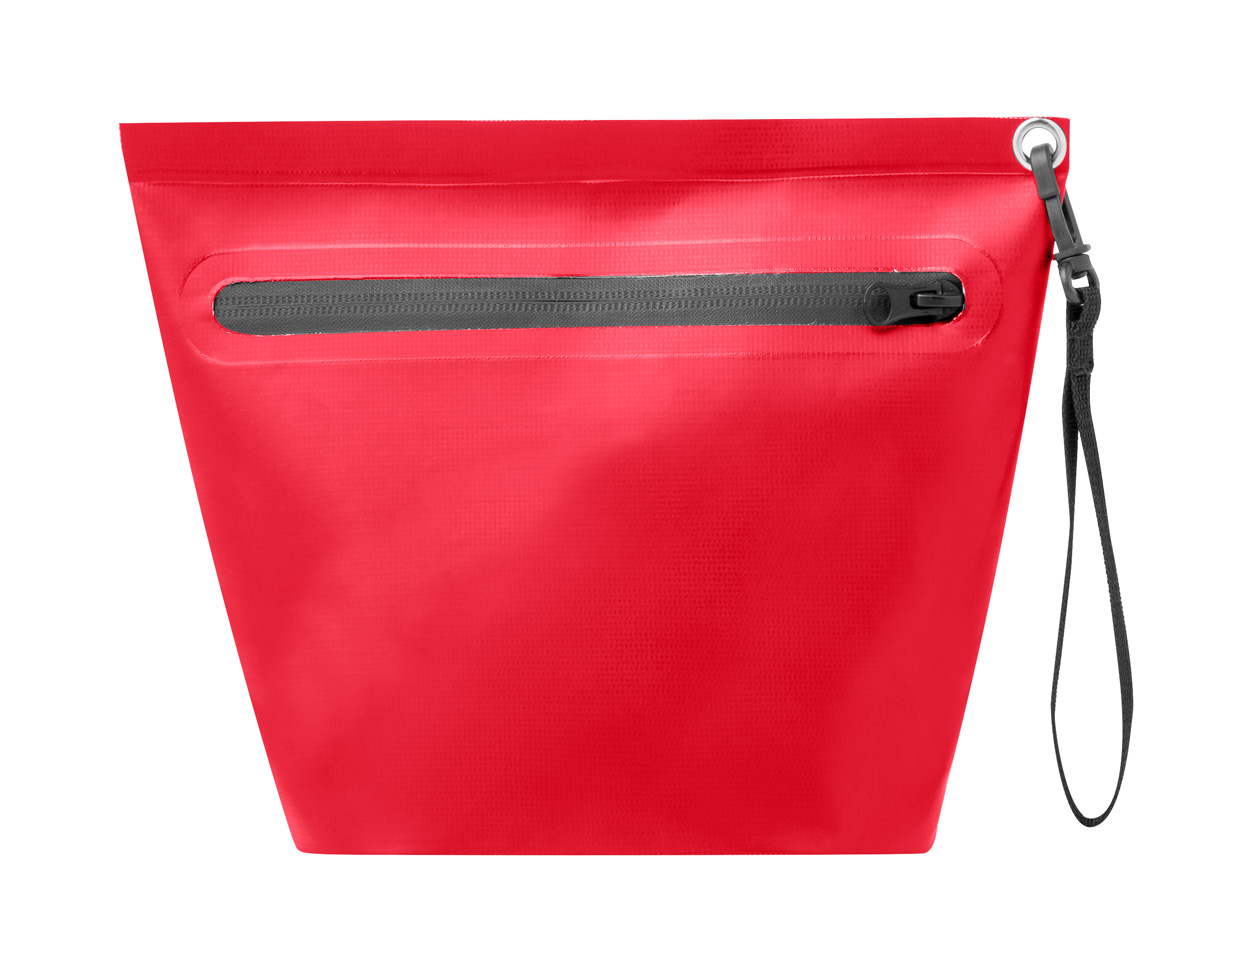 Dalmas multipurpose bag - red